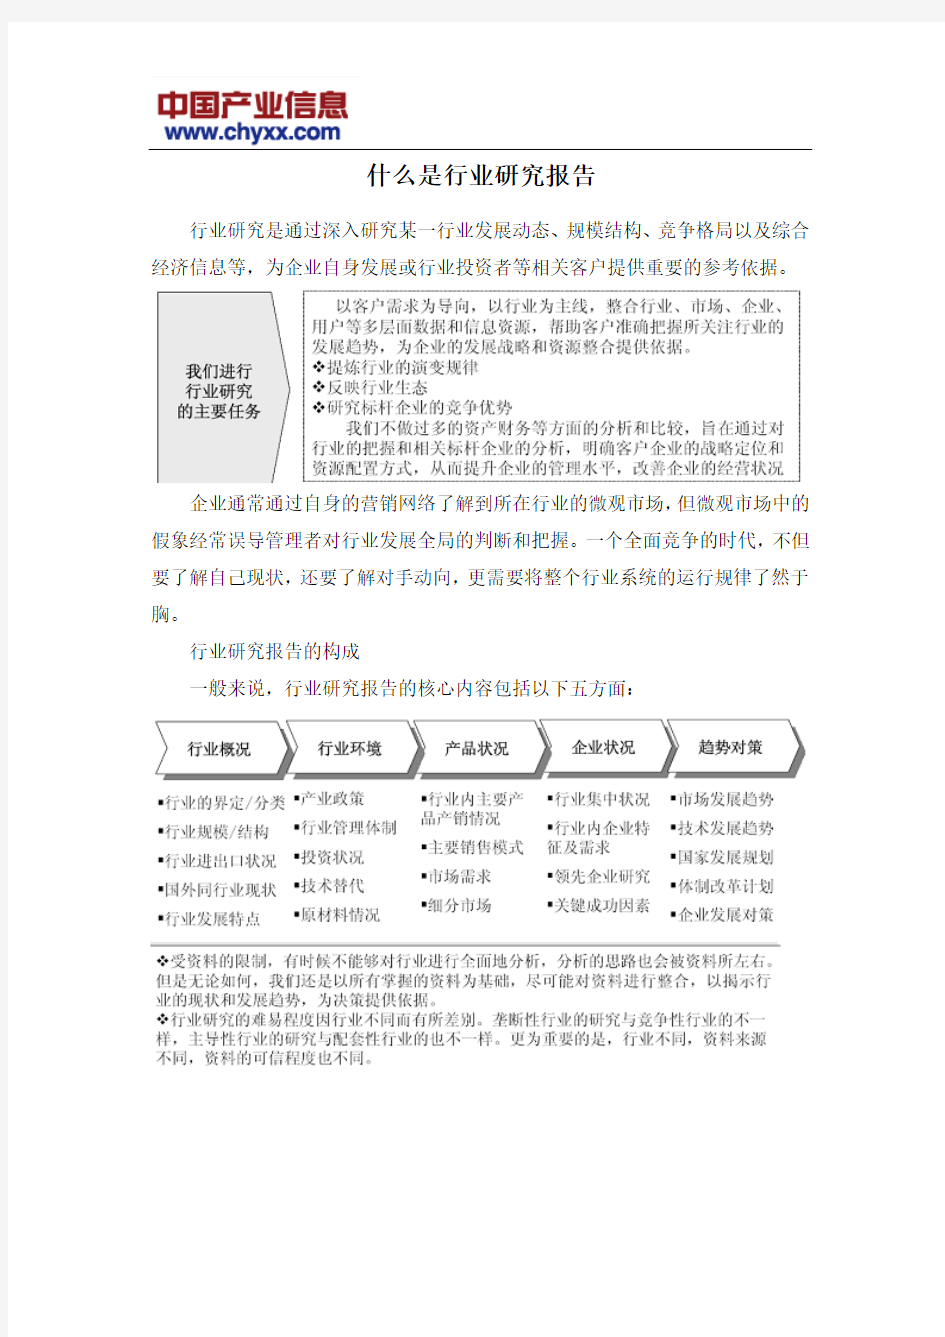 2016-2022年中国光敏器件市场评估报告